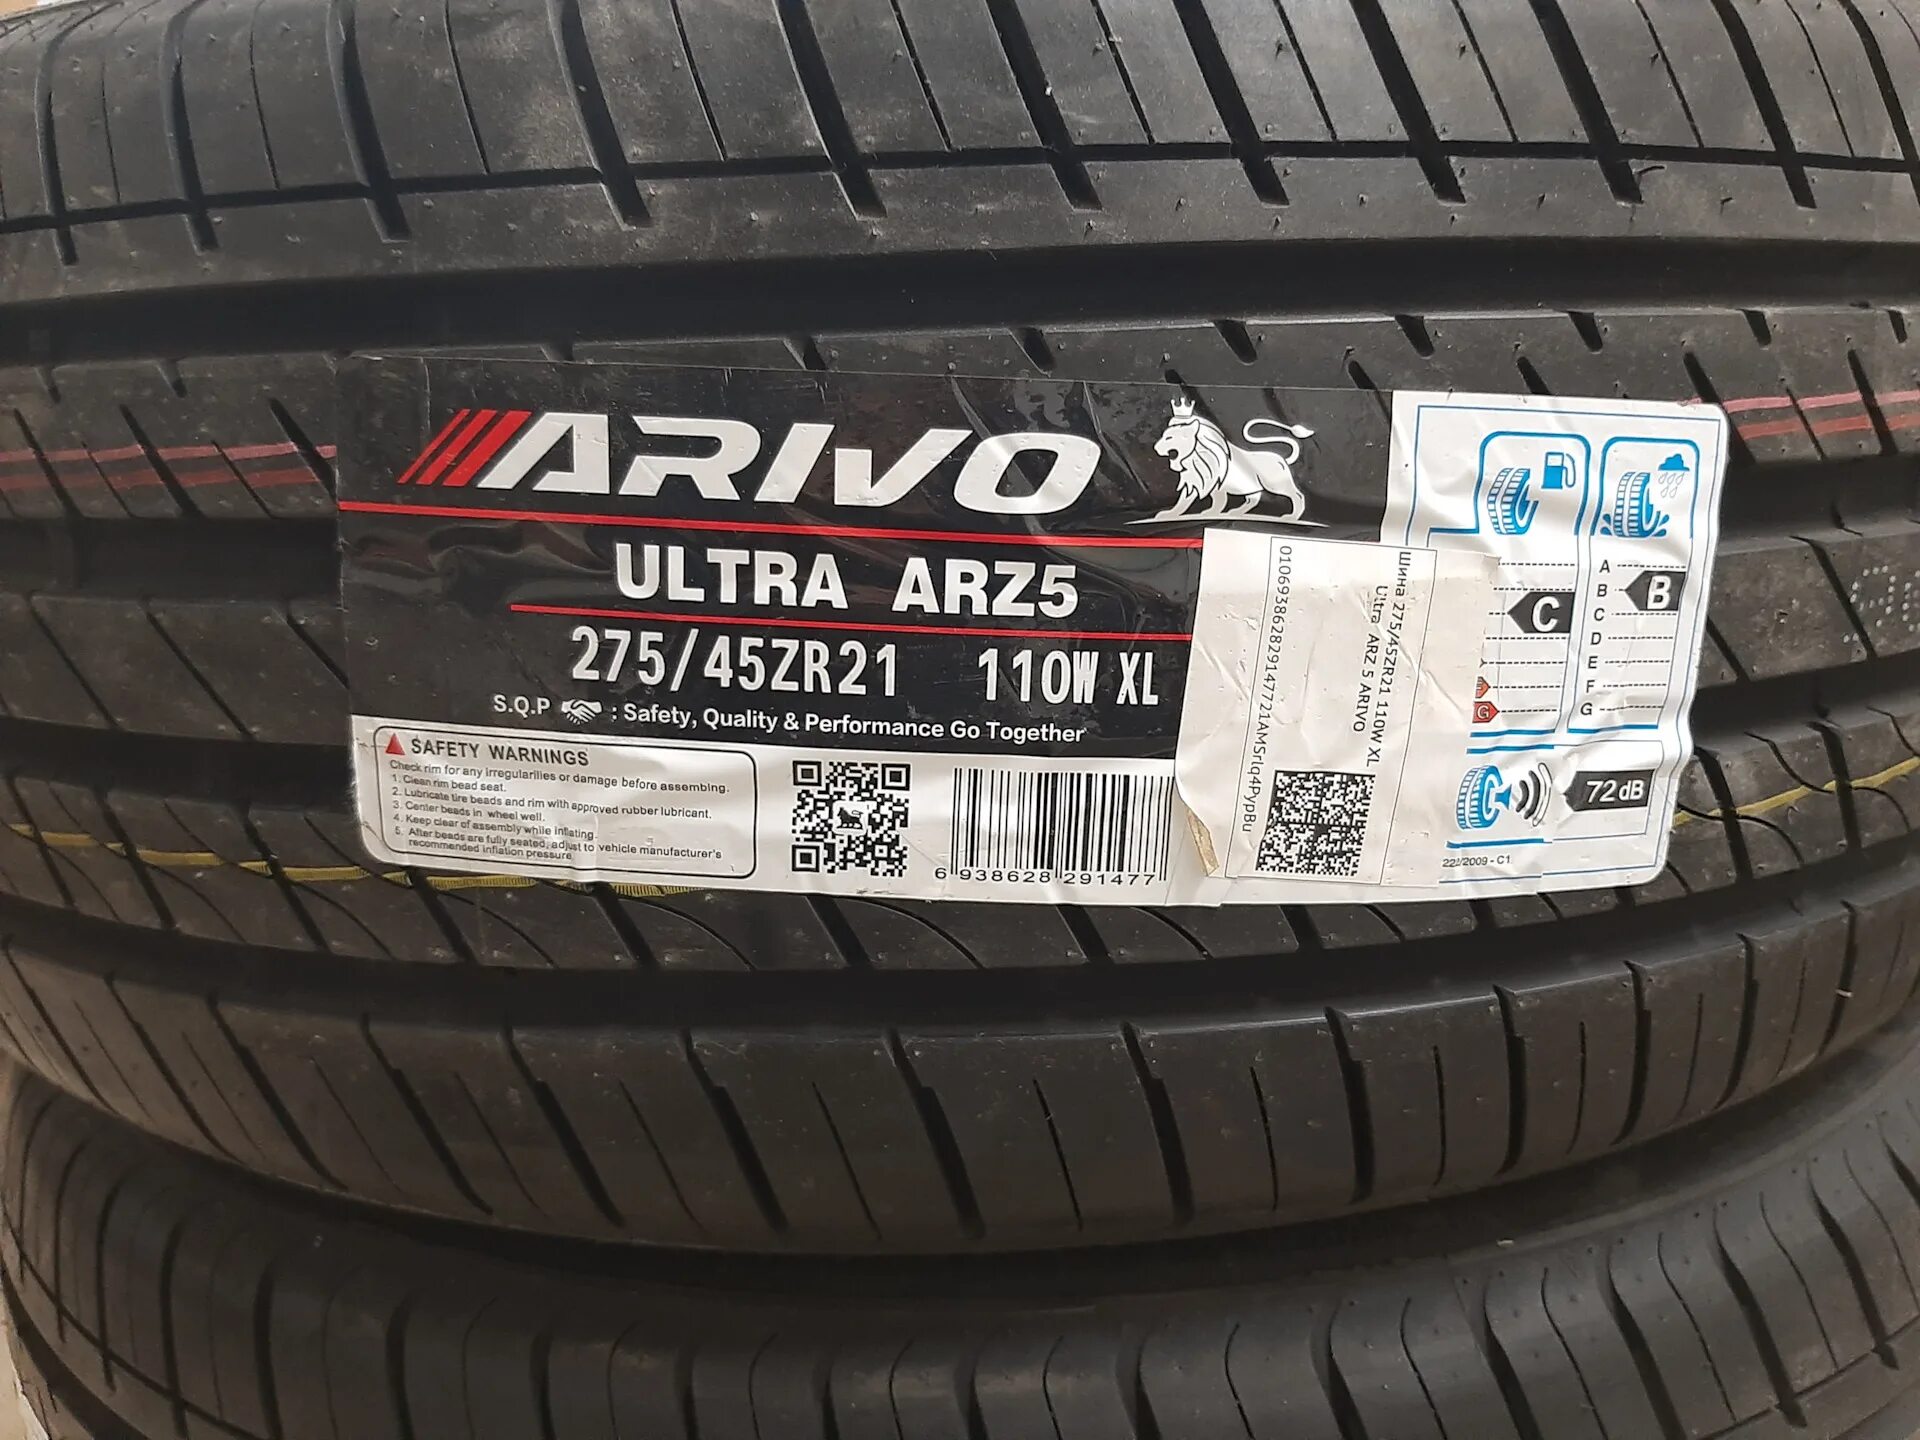 Ultra arz5 шины отзывы. Arivo Ultra arz5 275/45r21. Arivo Ultra arz5 шина. Arivo Ultra arz5 235/55 r19. Arivo шина летняя Ultra arz 5.